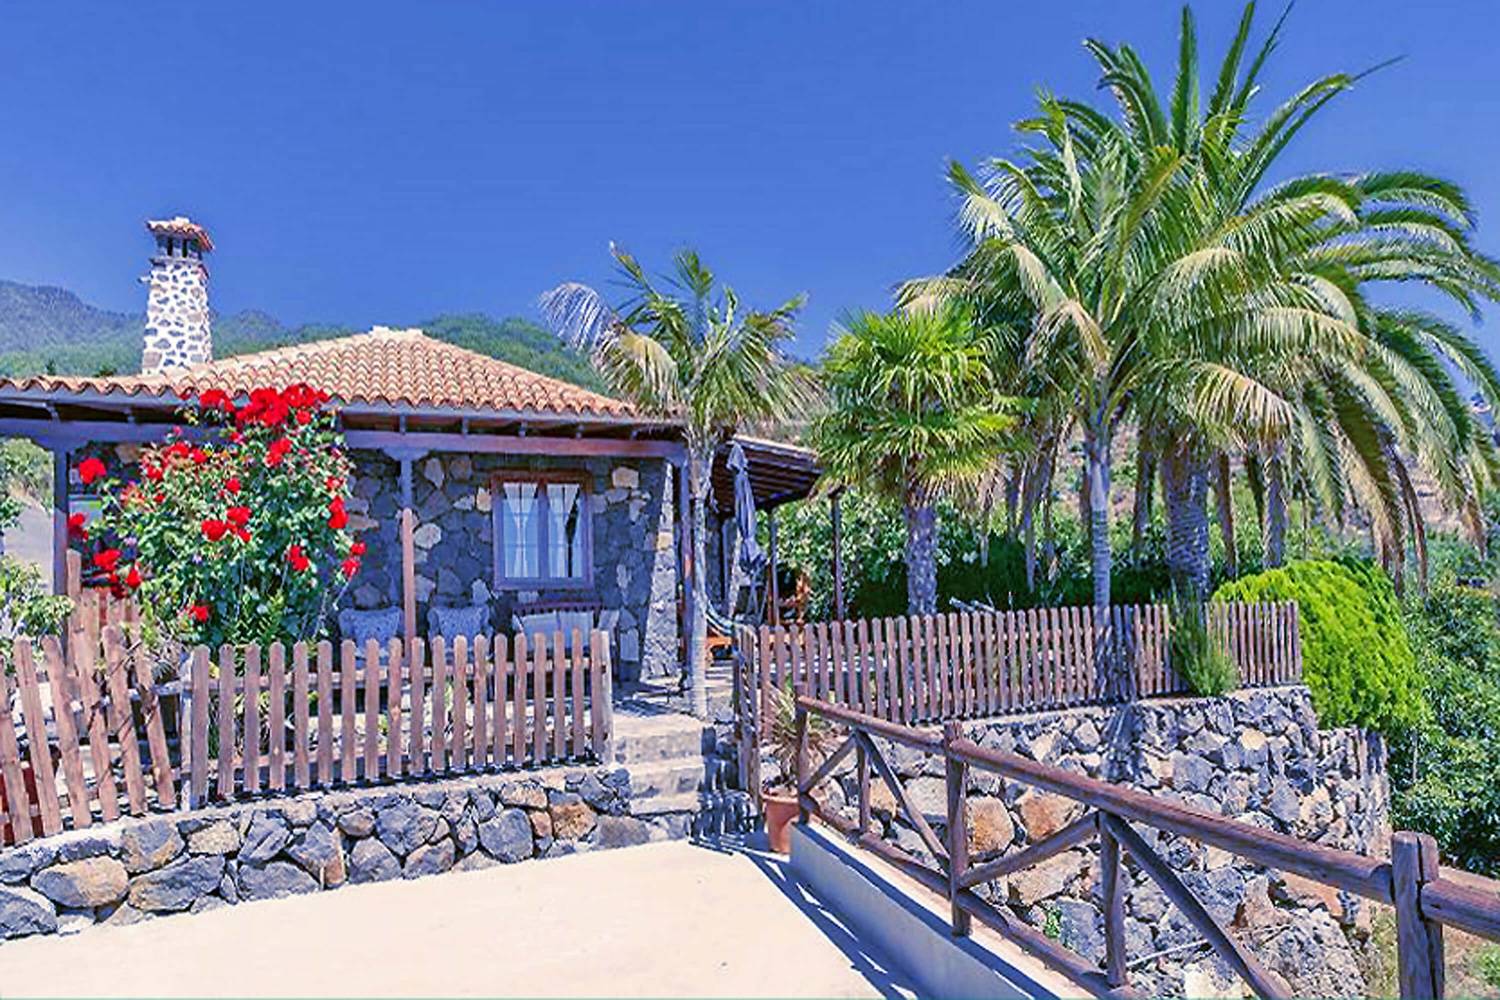 Rustikt hus totalrenoverat, med inredning som kombinerar träelement och varma färger och ett trevligt utomhusområde med uppfriskande palmer